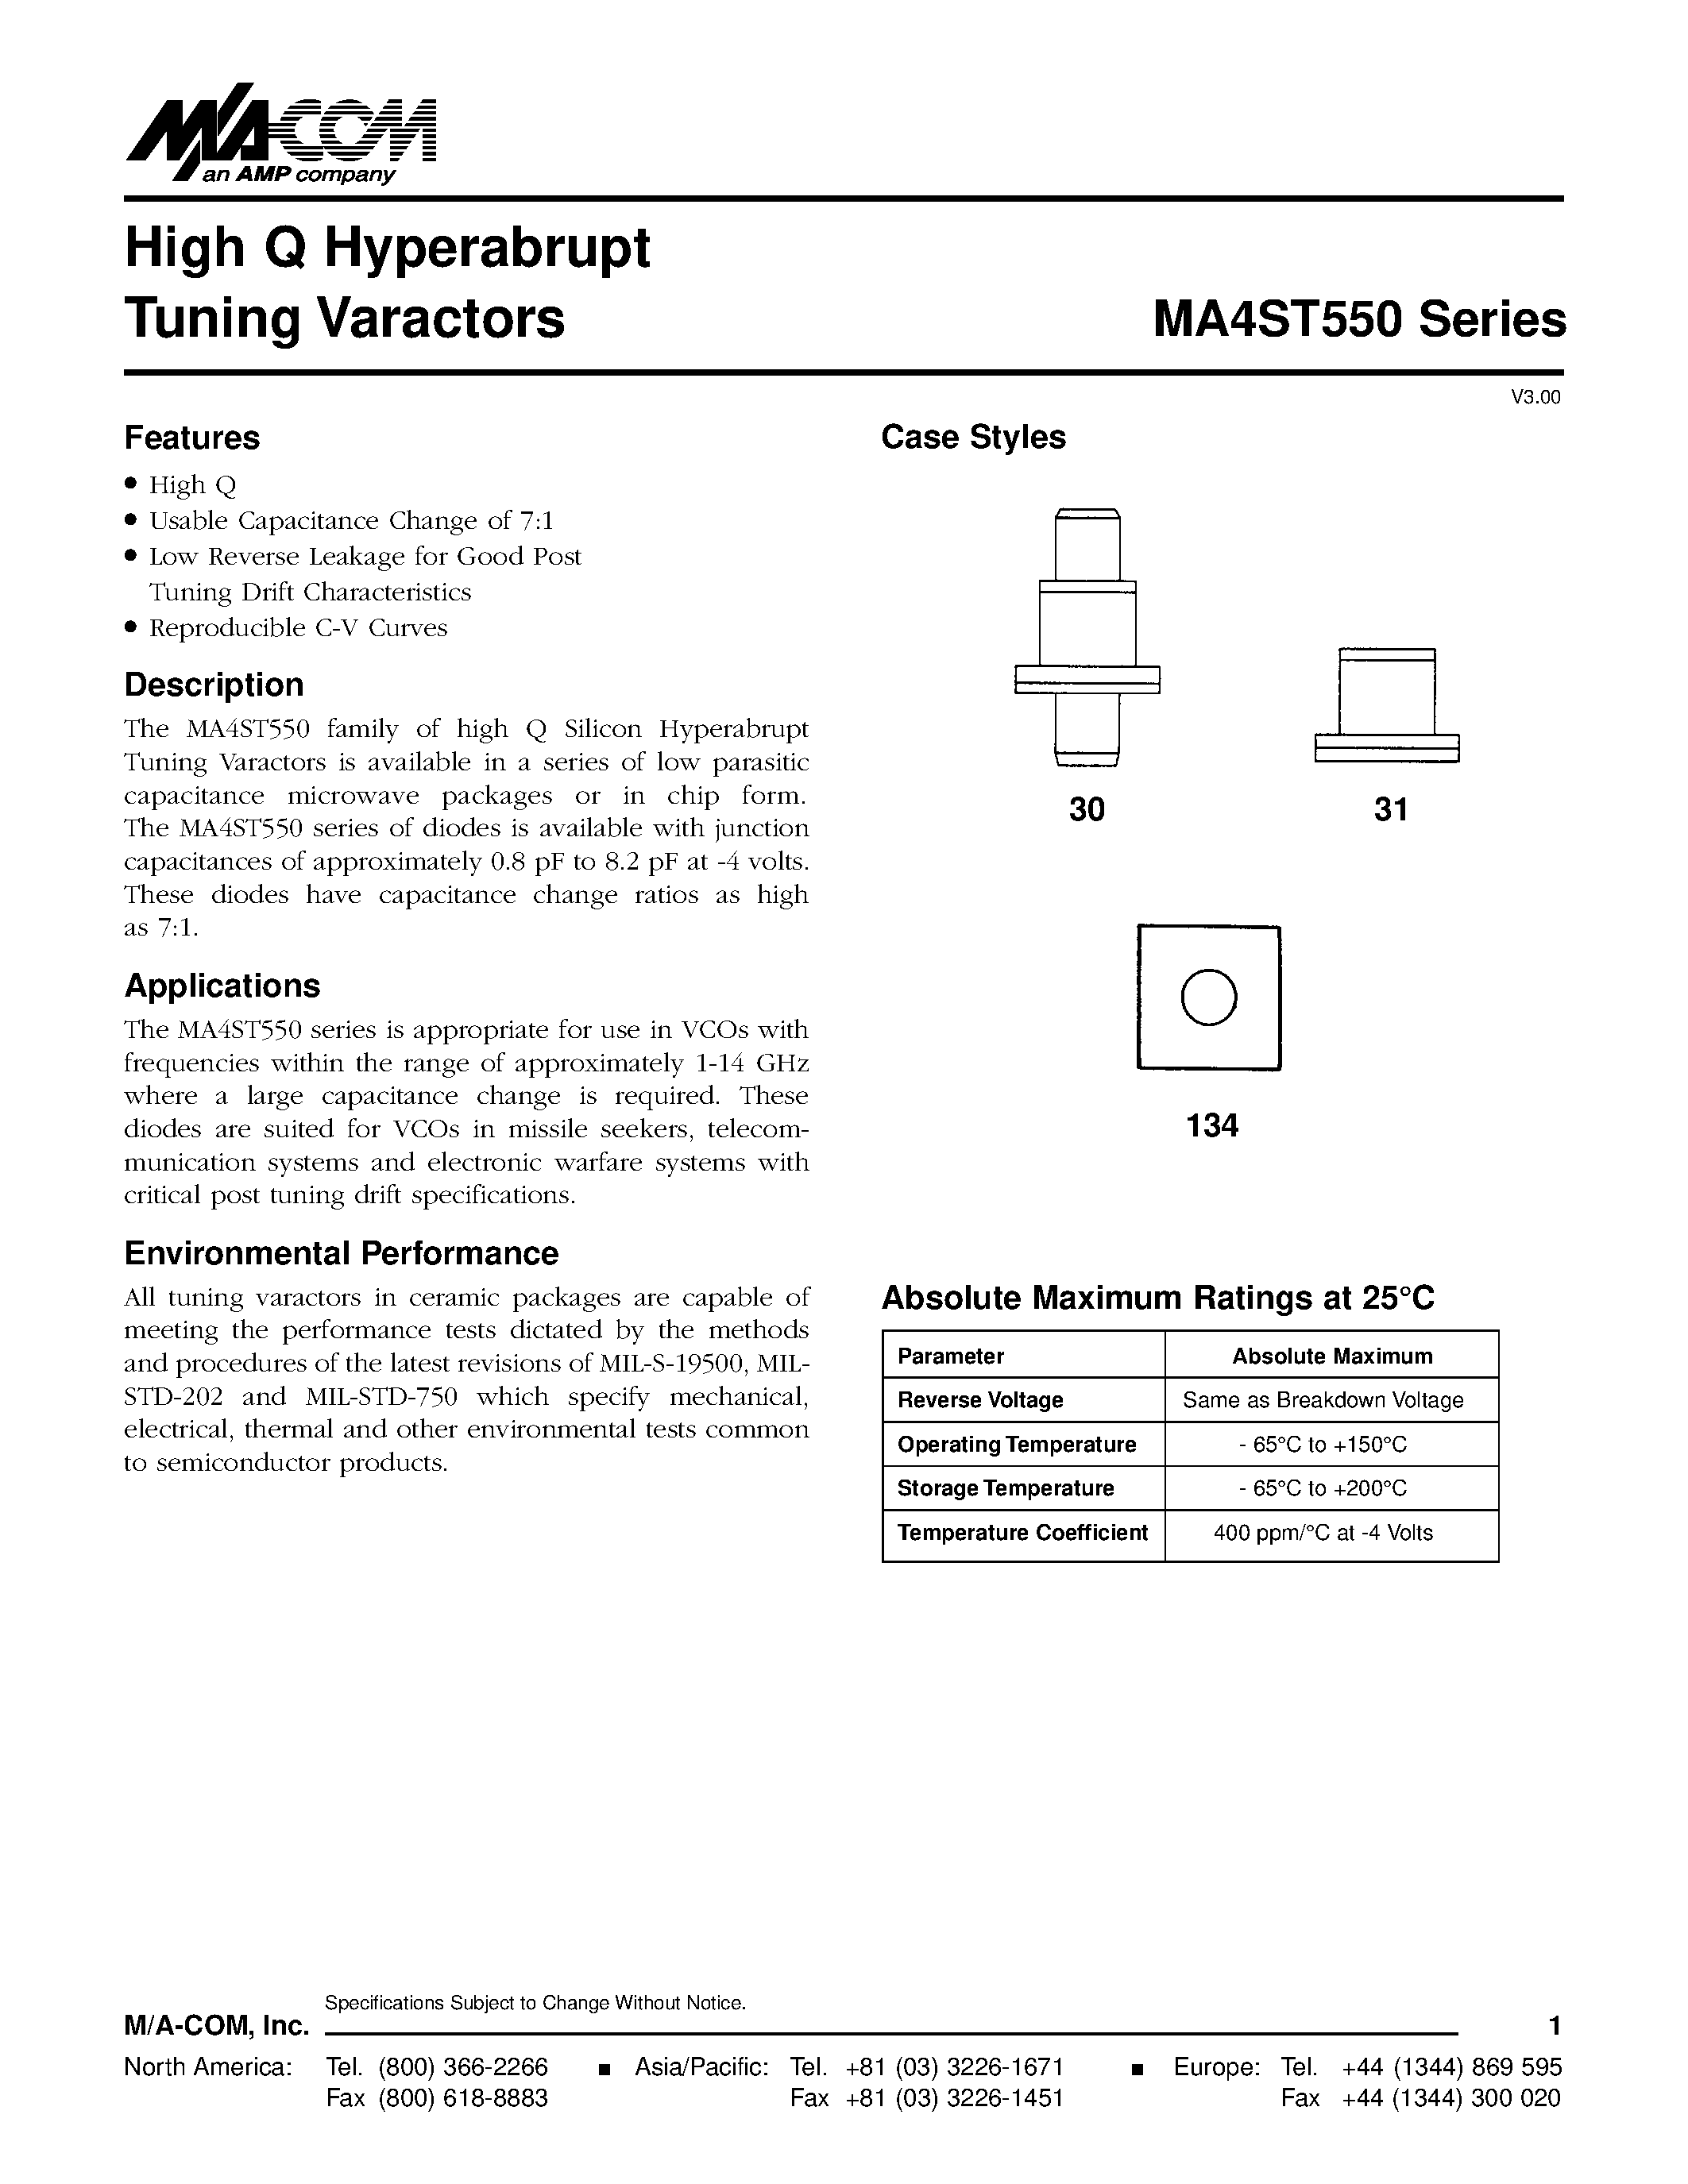 Даташит MA4ST554 - High Q Hyperabrupt Tuning Varactors страница 1